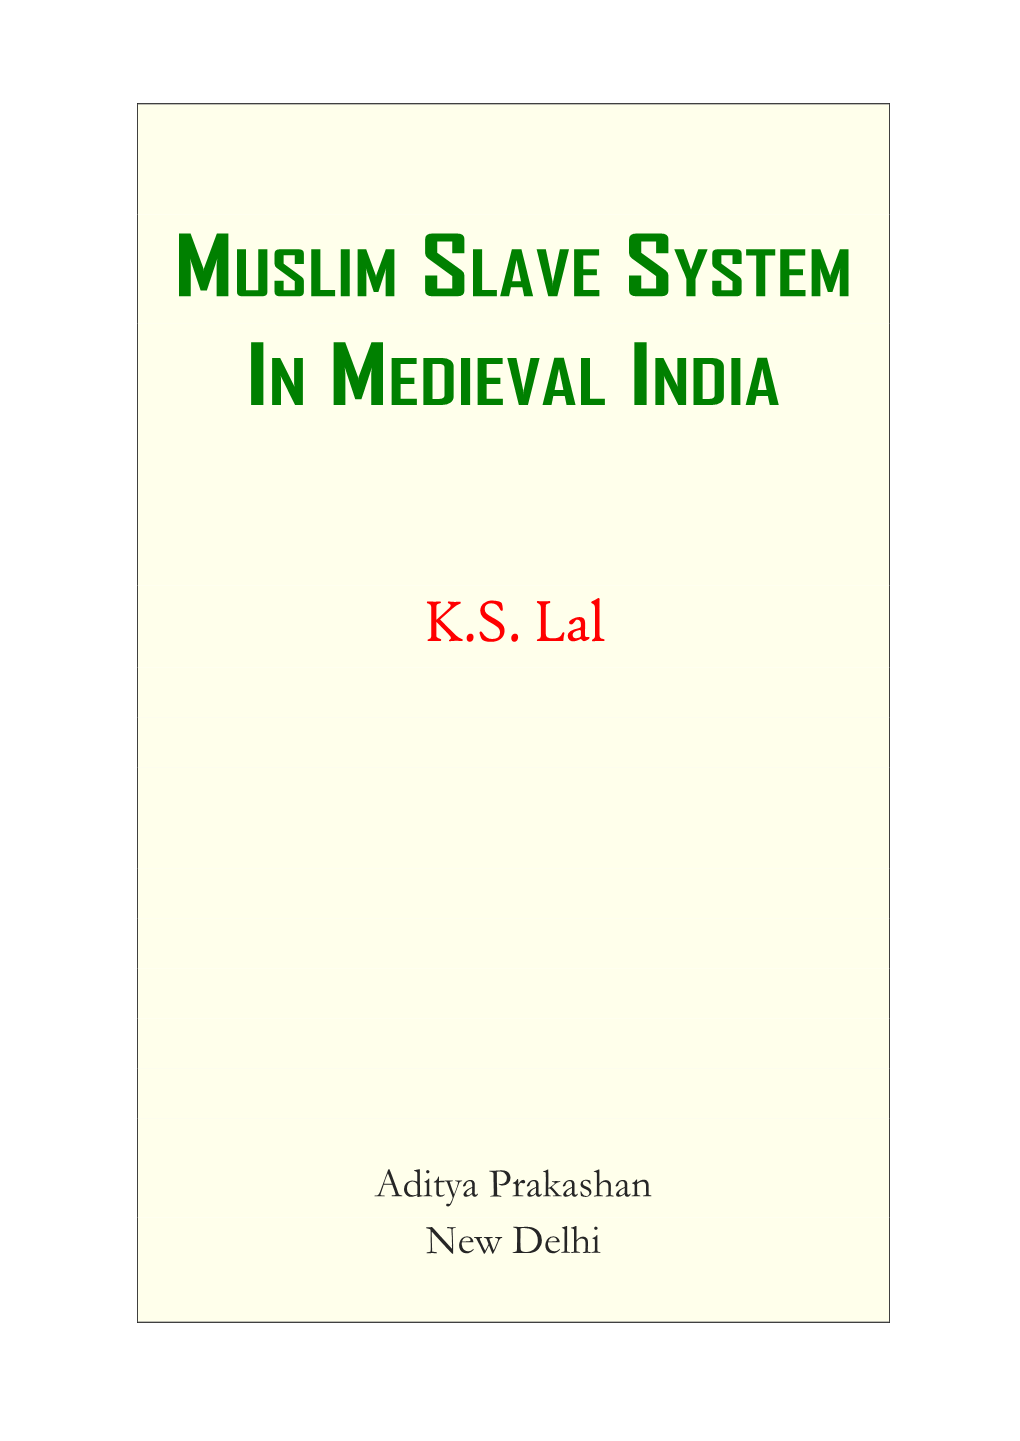 Muslim Slave System in Medieval India K.S